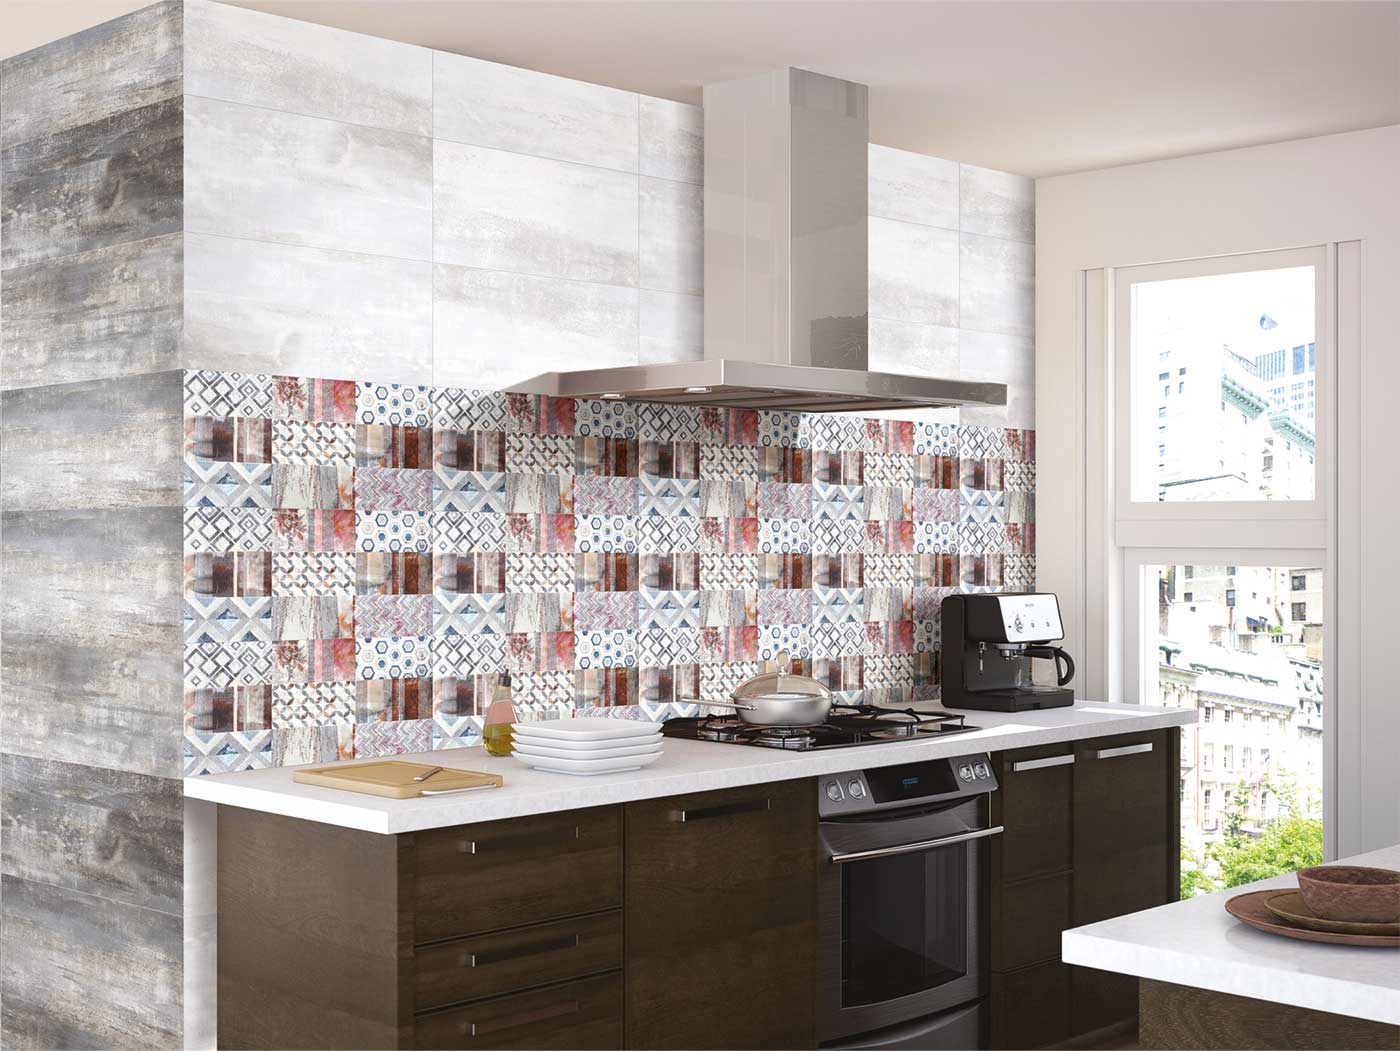 35 Motif Keramik Dinding Dapur Minimalis Harga Terbaik 2020